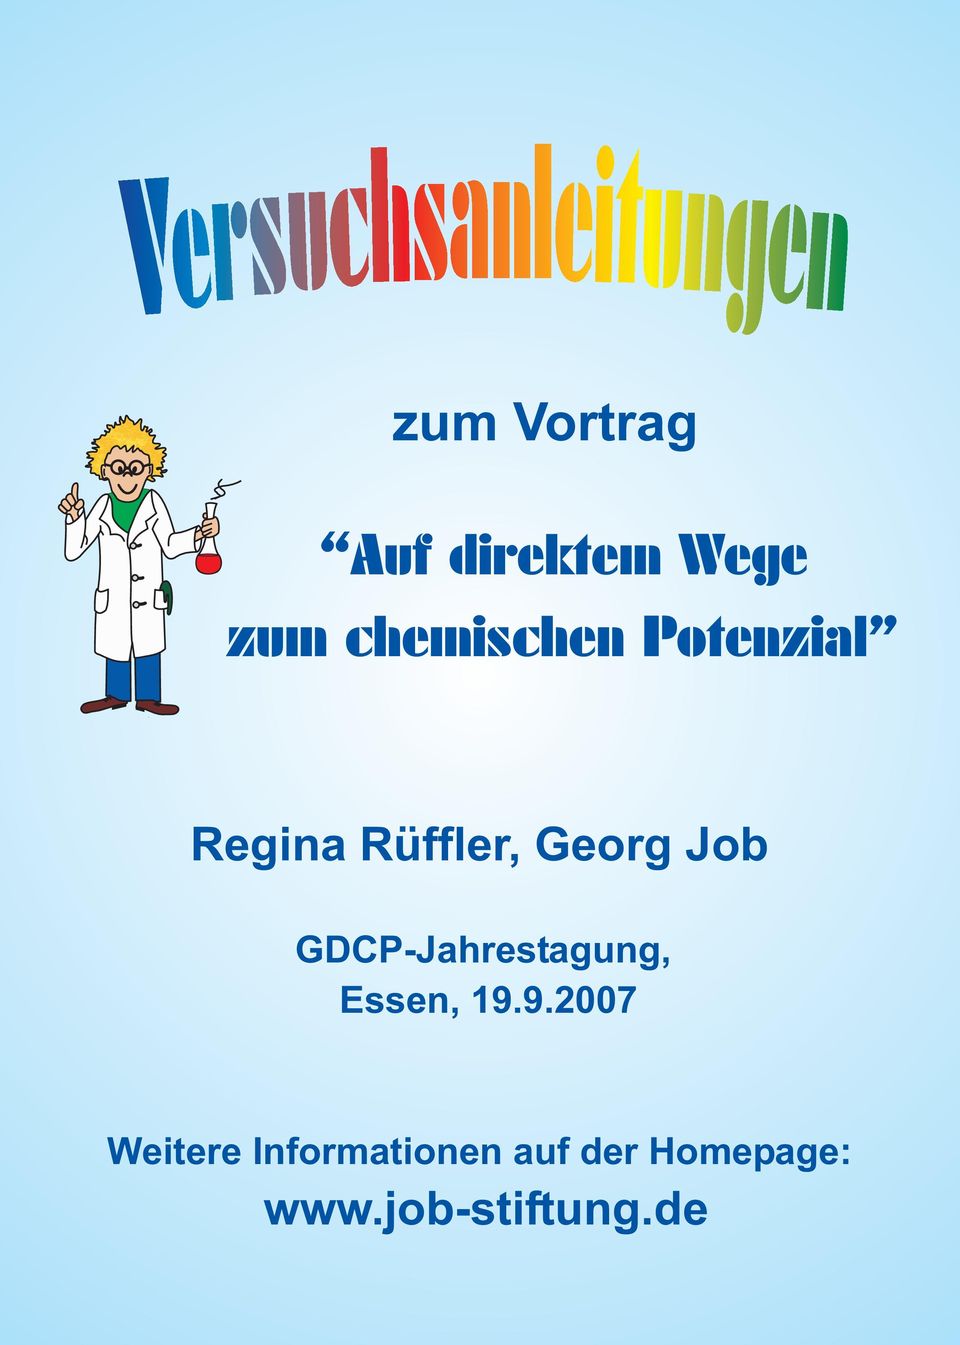 Regina Rüffler, Georg Job GDCP-Jahrestagung, Essen, 19.